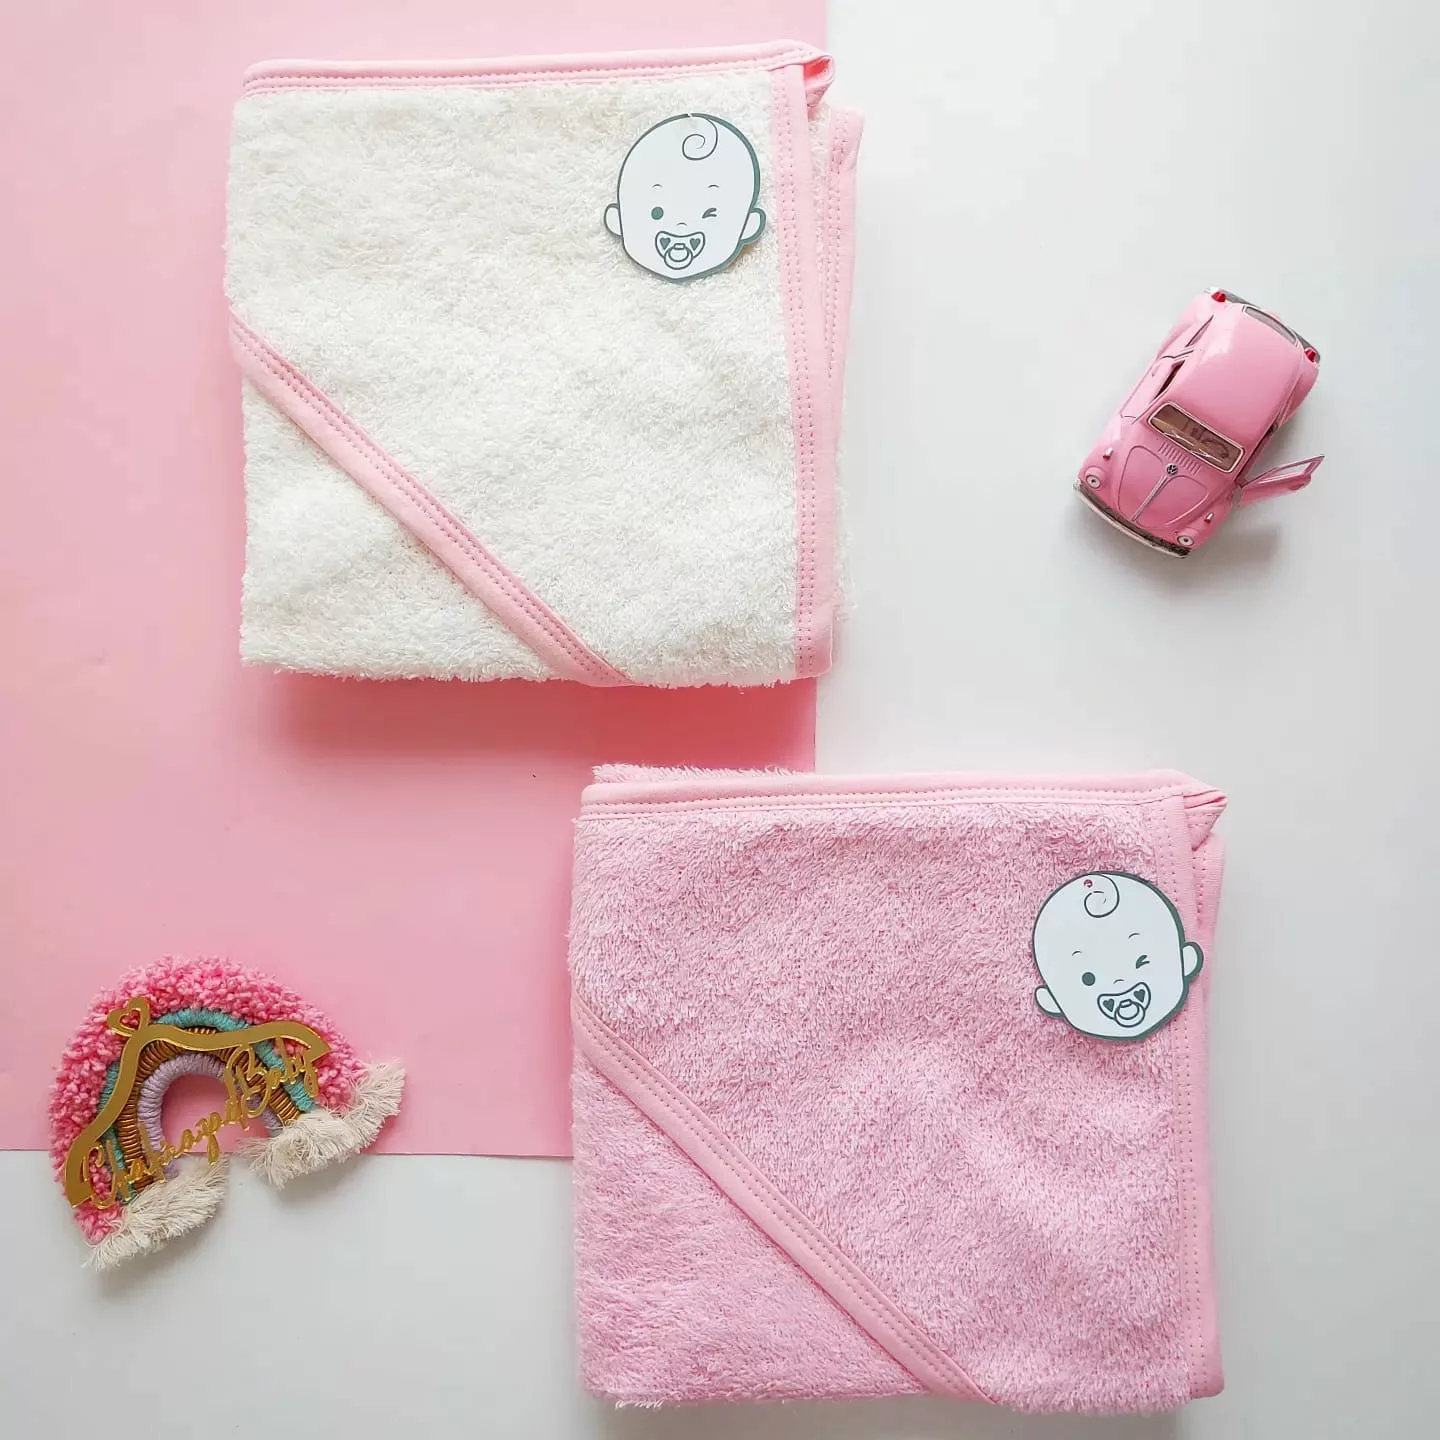 serviette de bain pour bébé Duo avec capuche en coton